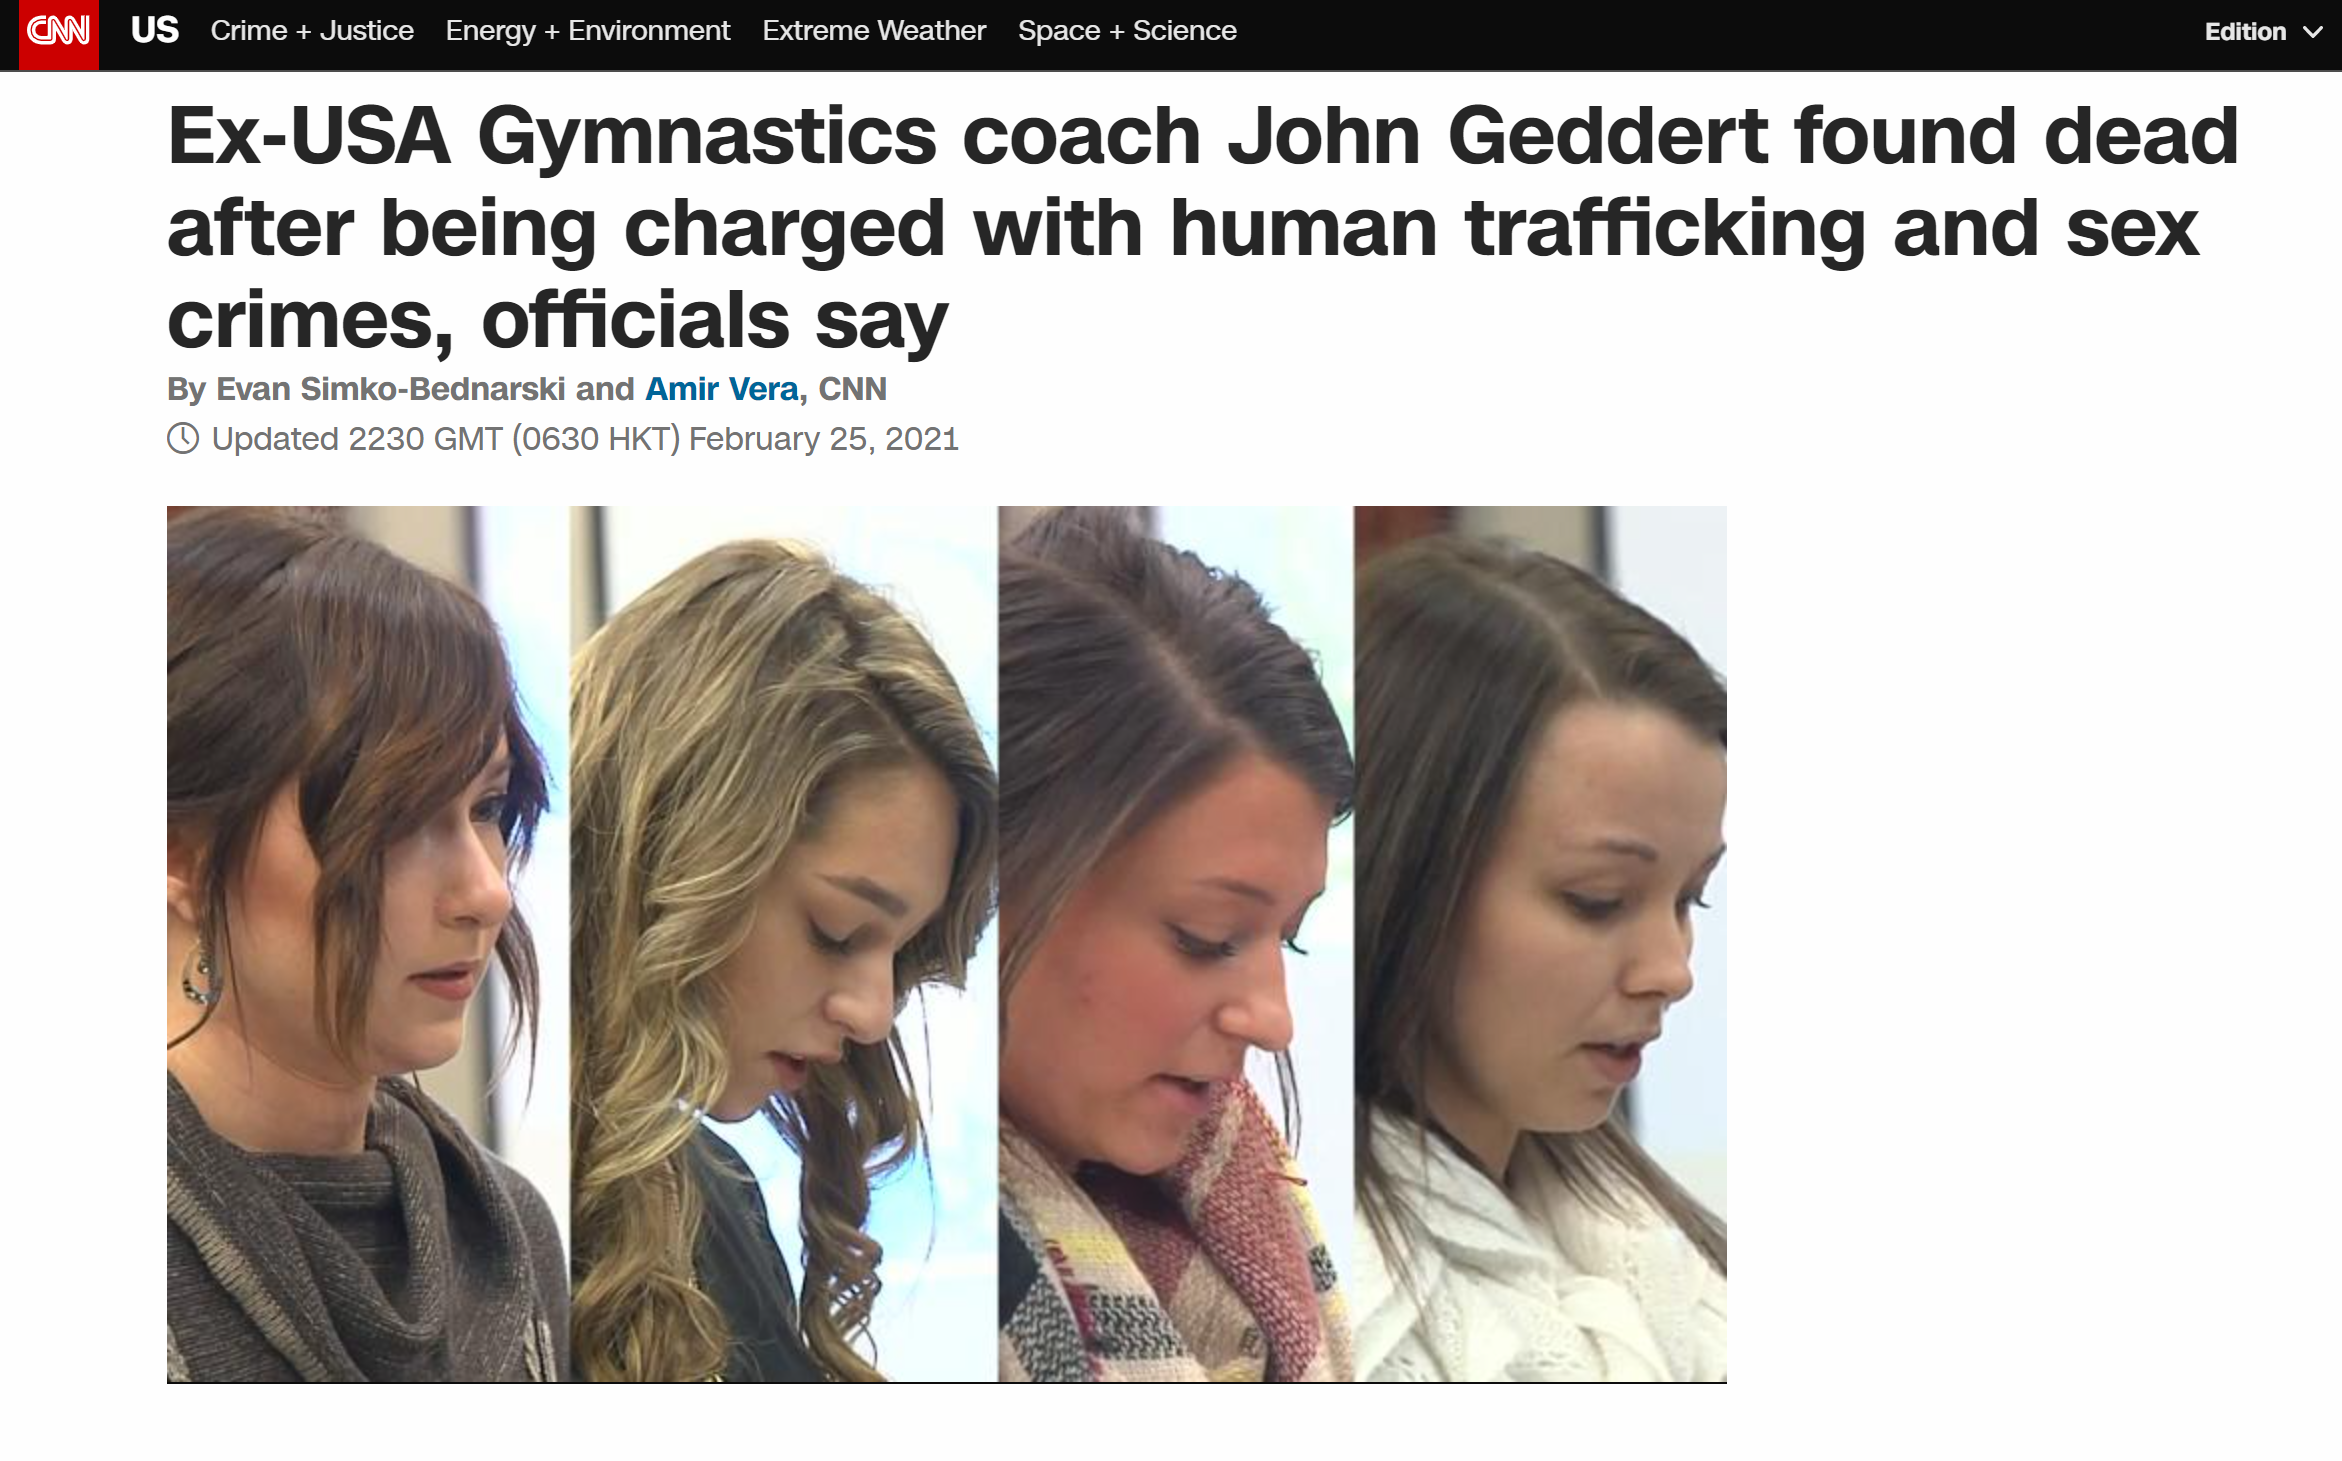 快讯 前美国奥运体操教练被指控性犯罪后自杀